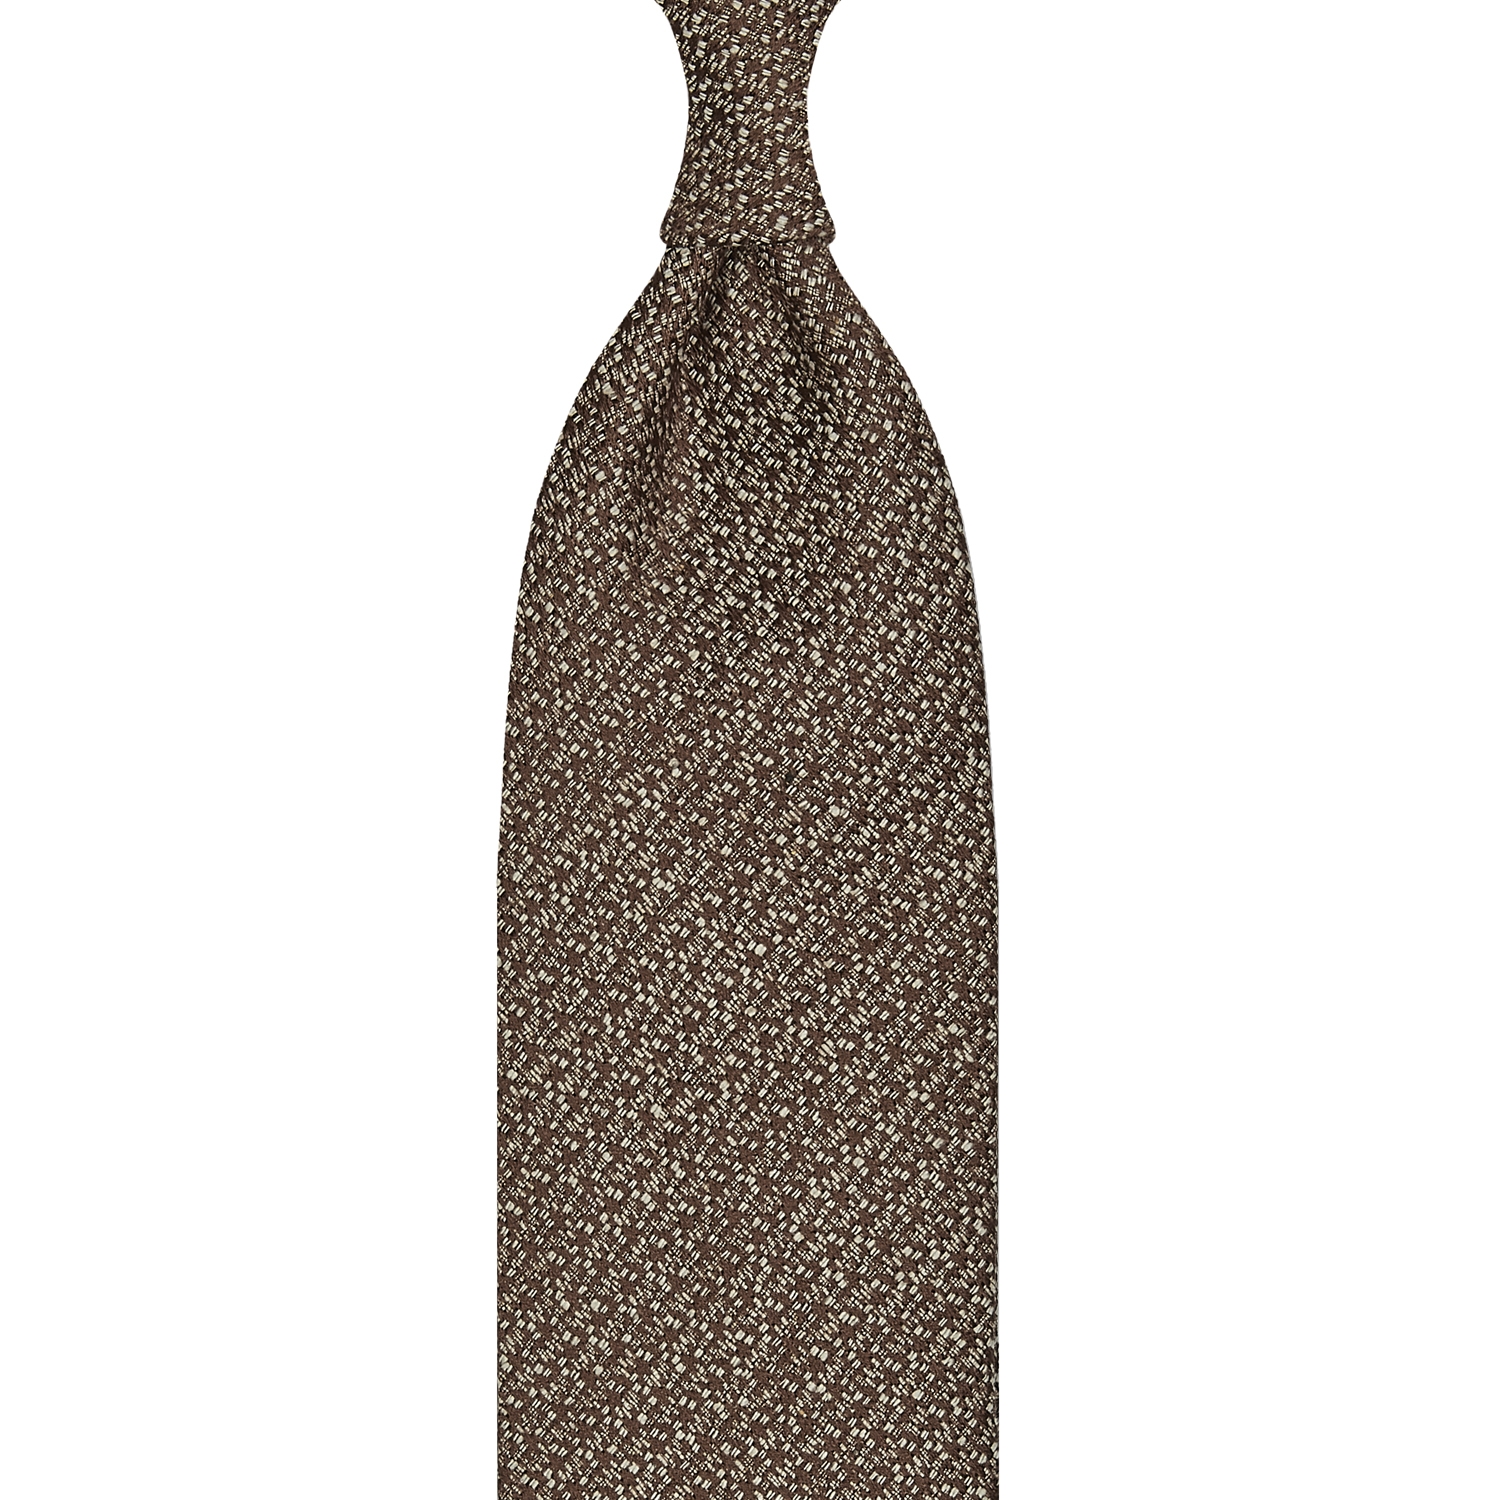 cravate classique non doublée en soie Tussah - marron / blanc moucheté